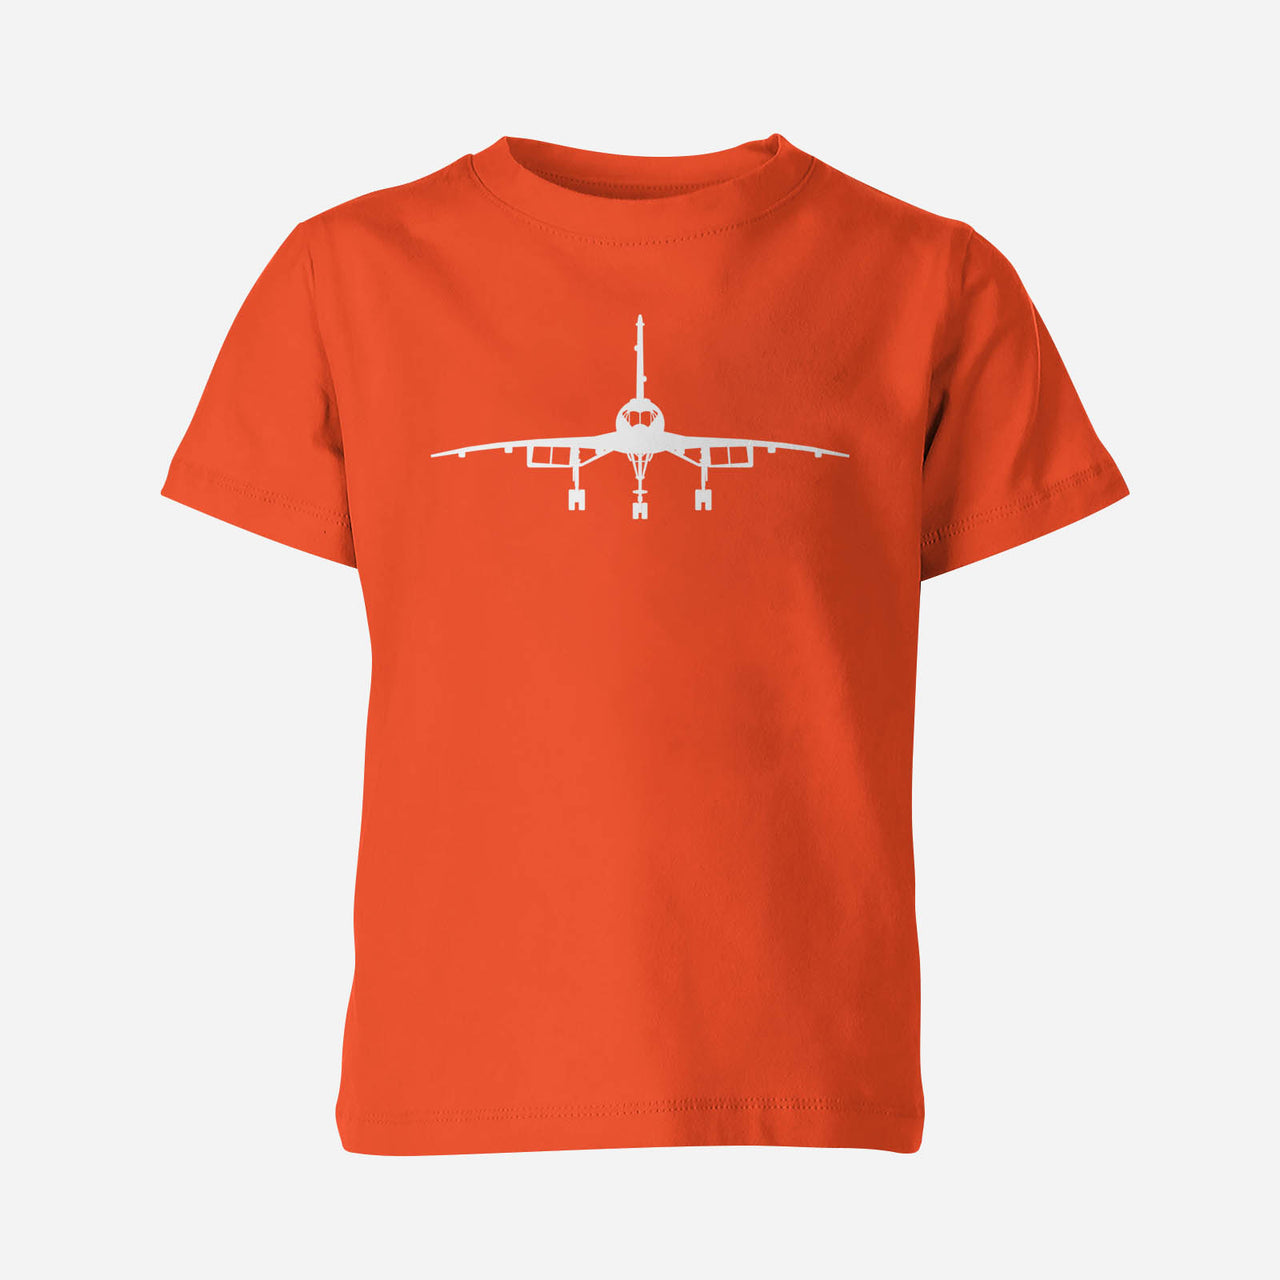 Concorde Silhouette Designed Children T-Shirts